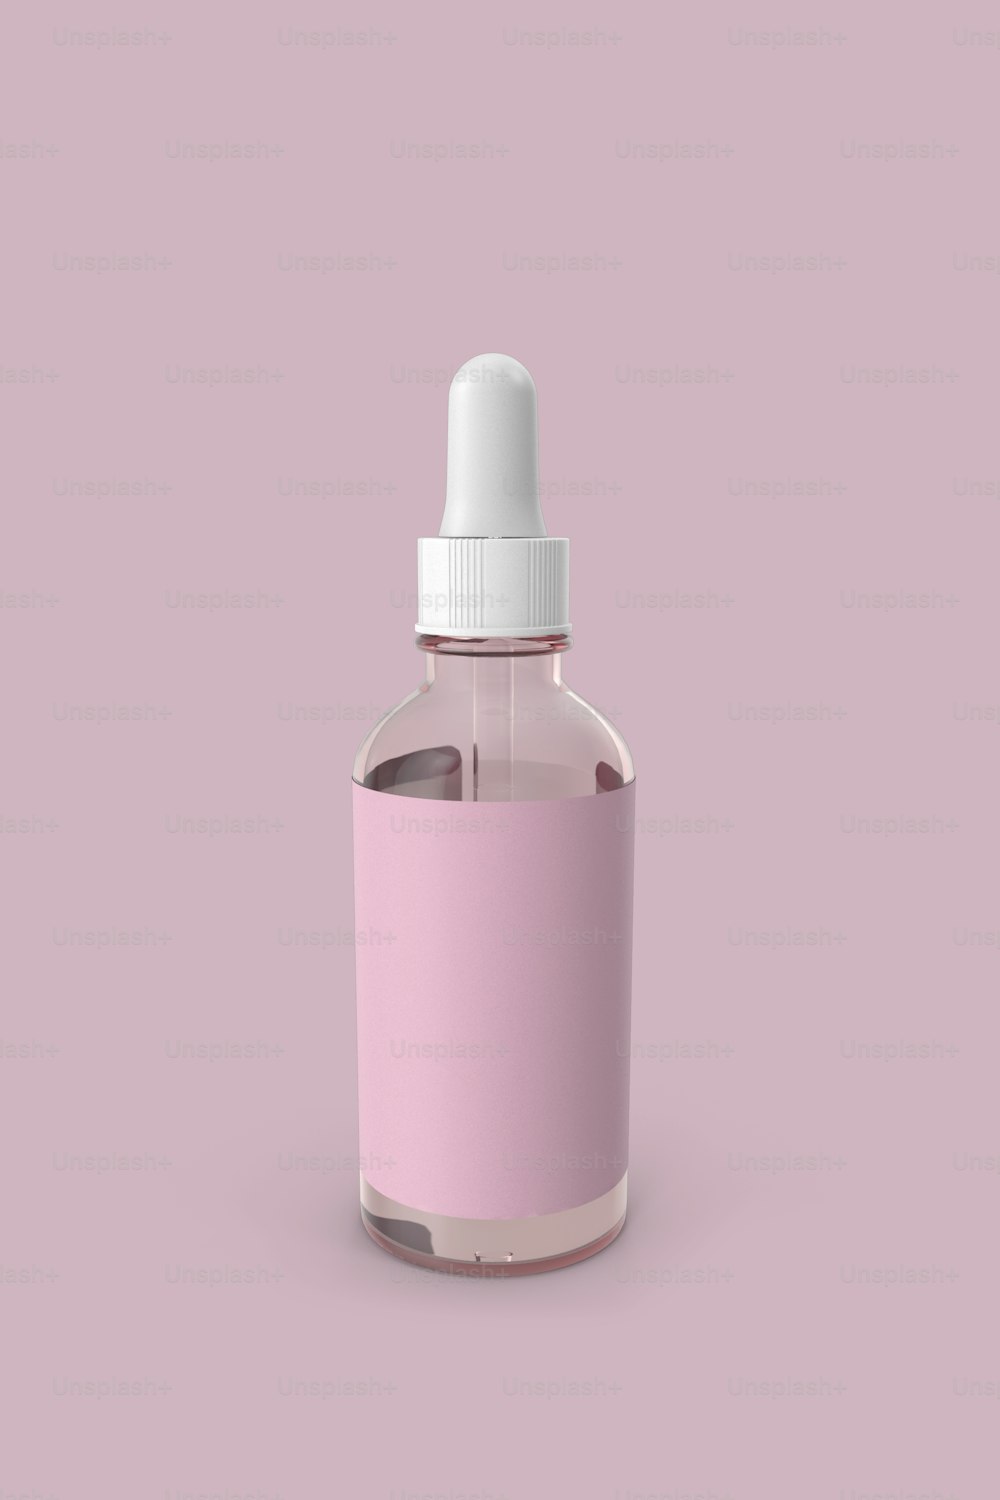 ピンクの背景に白いキャップを持つピンクのボトル